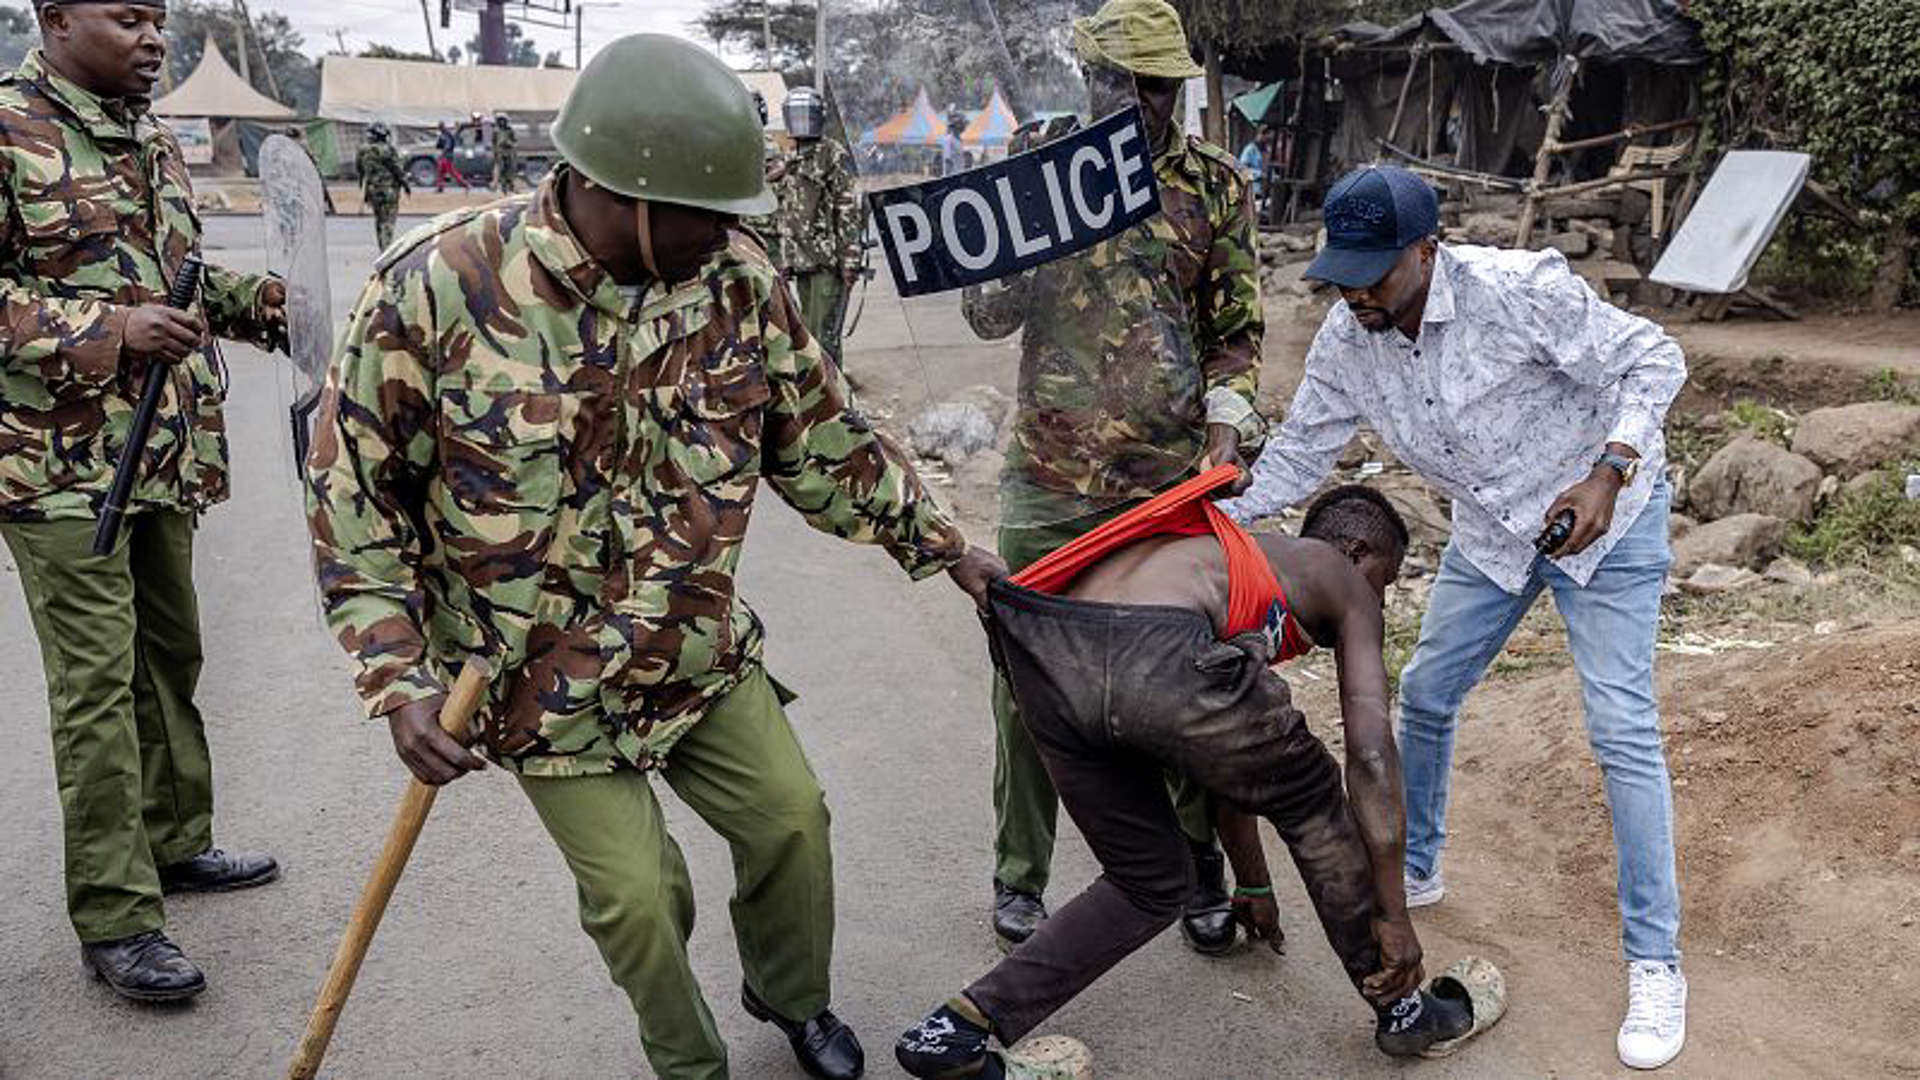 Demonstrations in Kenya